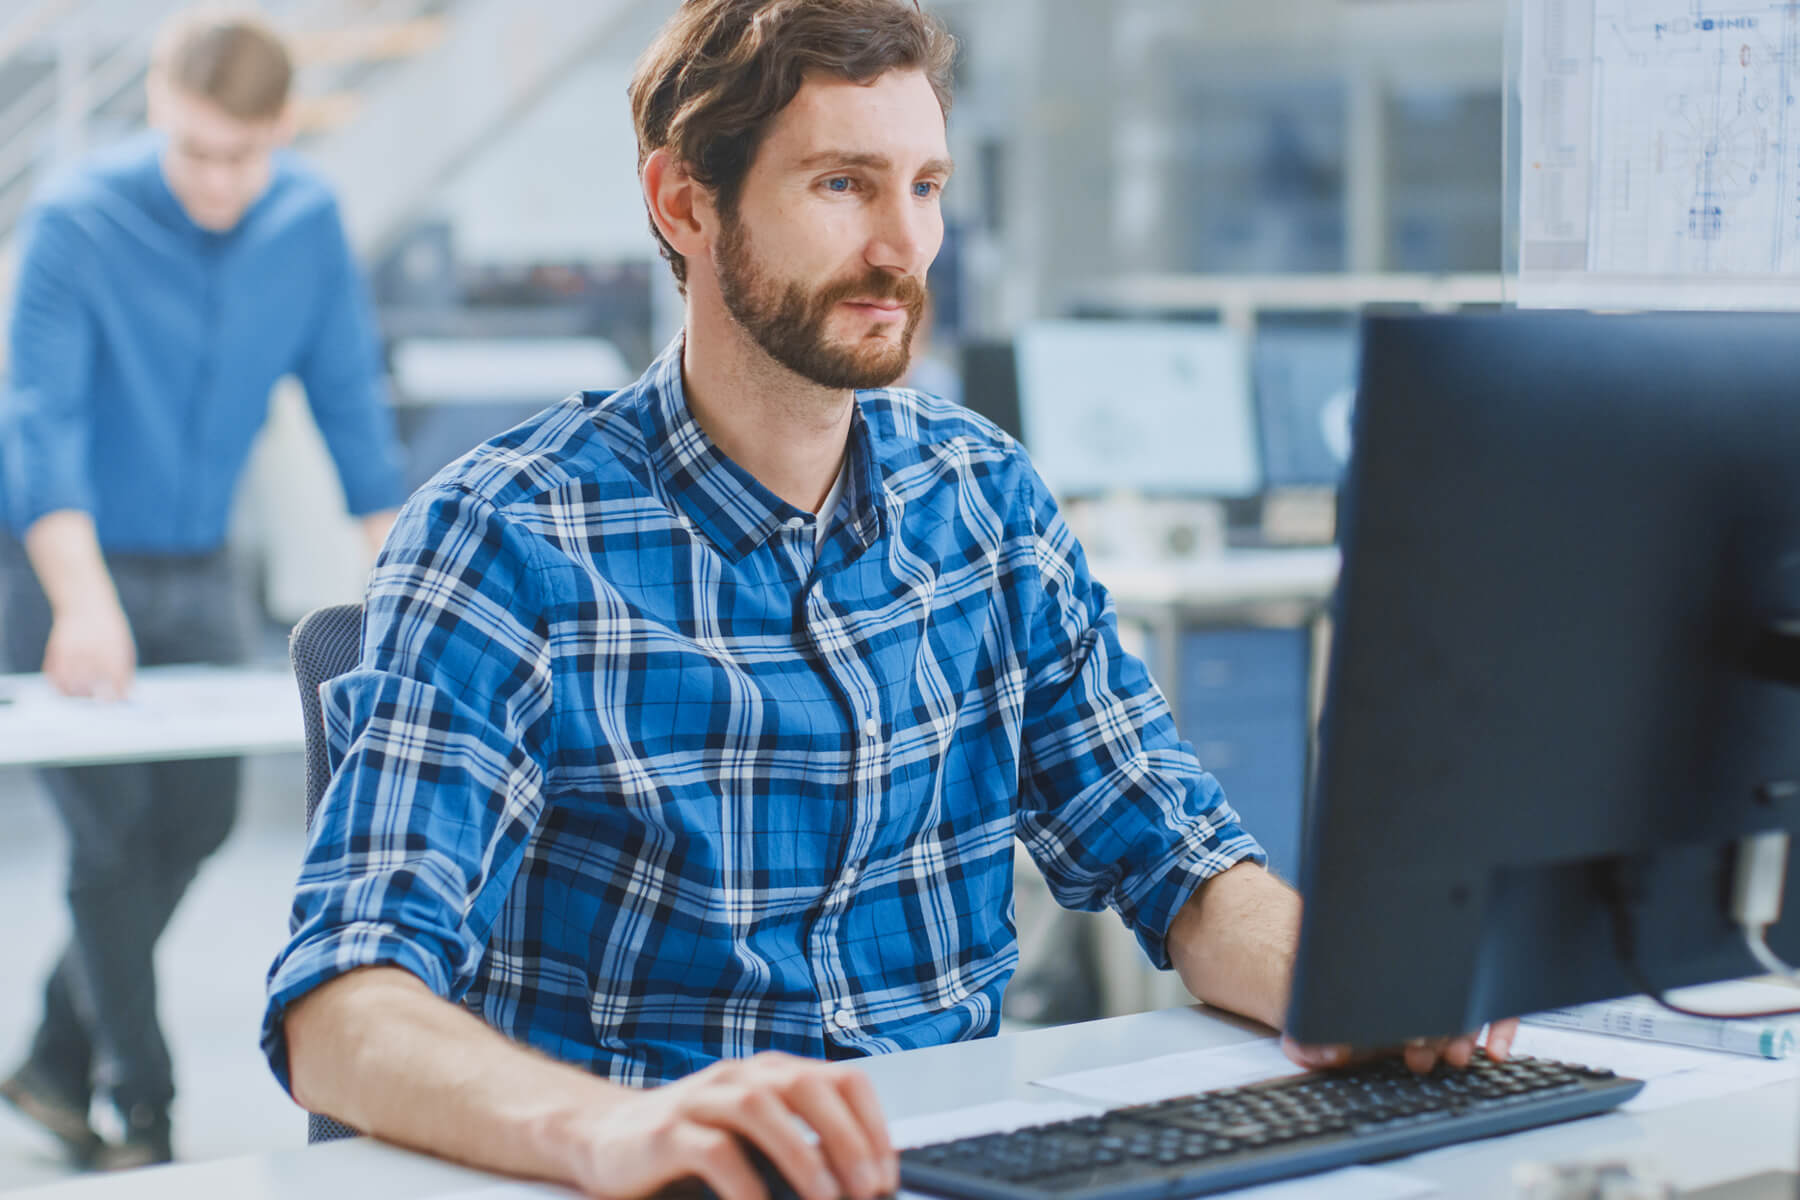 Ein Mann sitz an einem Schreibtisch vor einem Bildschirm und tippt auf der Tastatur. Im Hintergrund ist ein Büro zusehen.